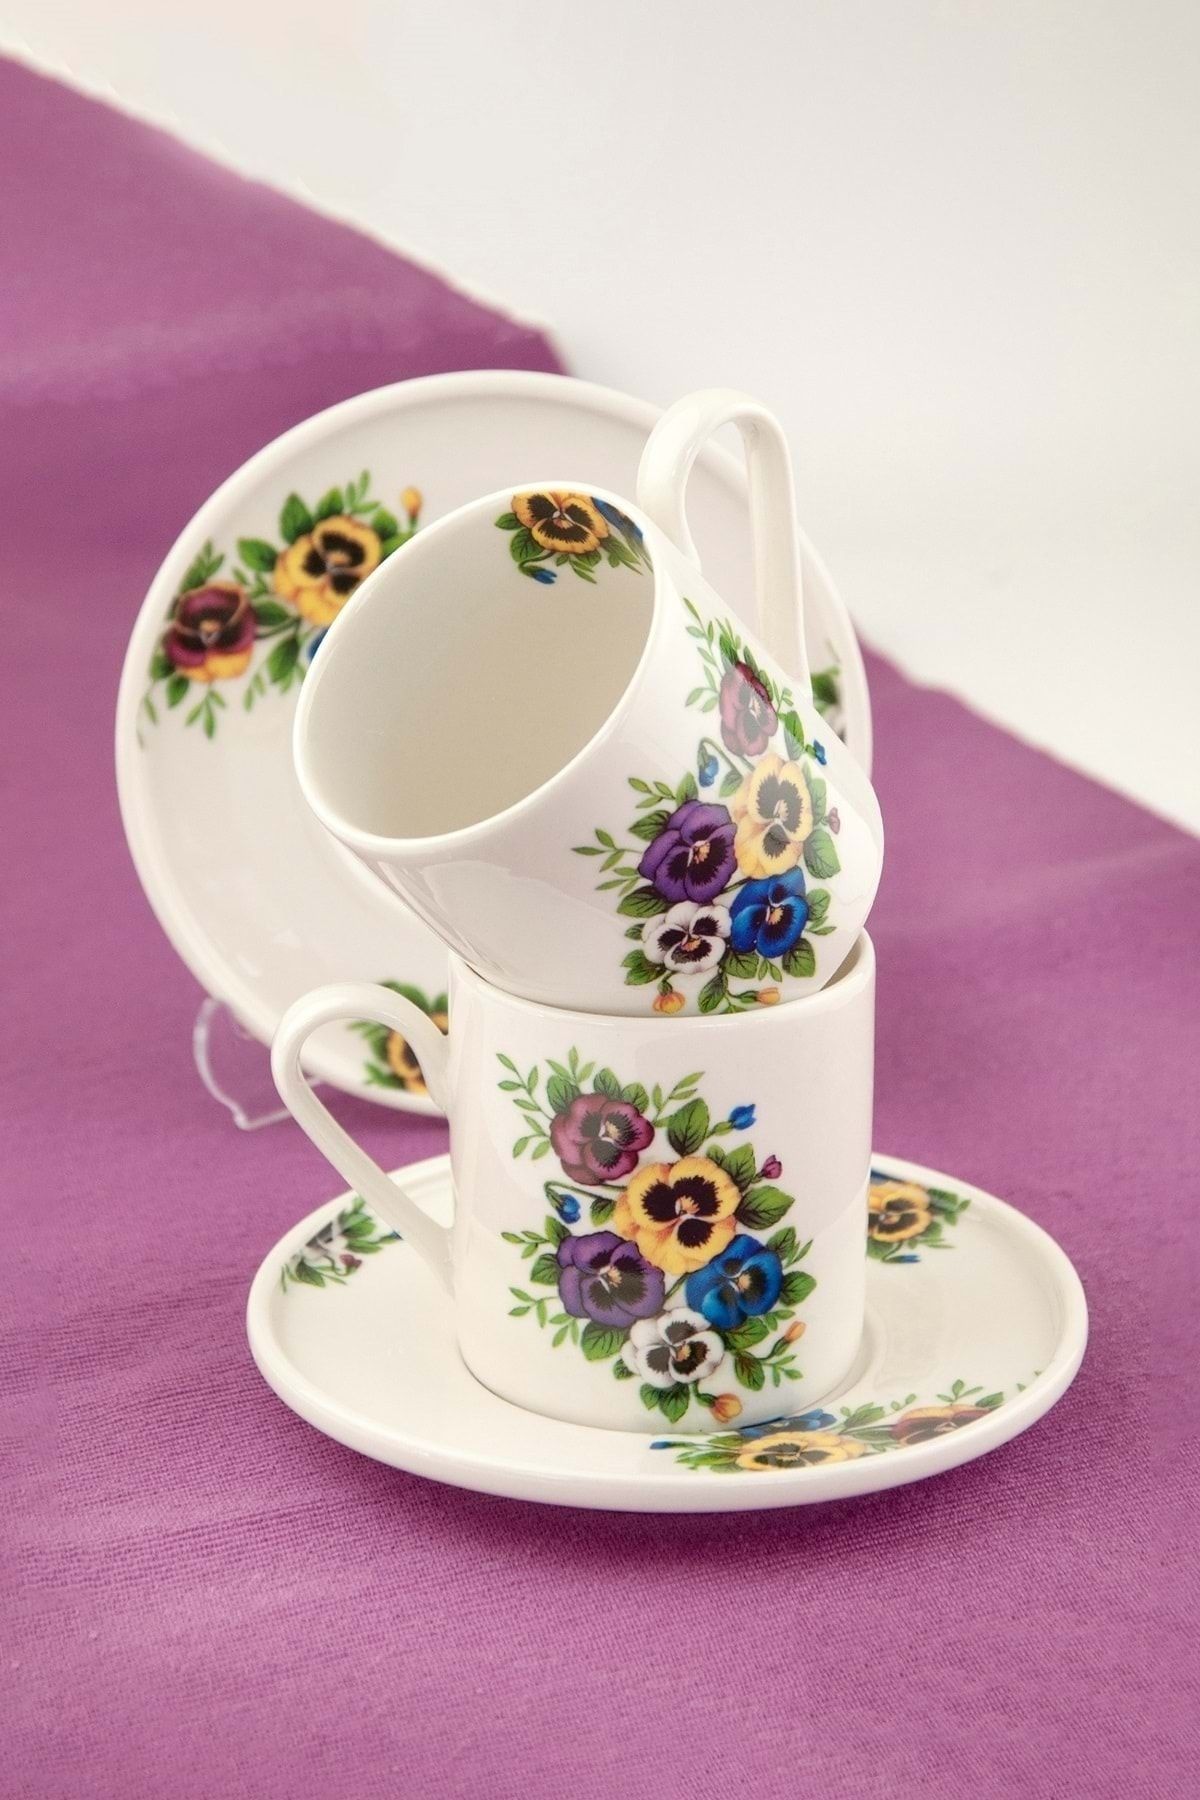 Bursa Porselen Dekor Menekşe 2 kişilik porselen çay fincan takımı